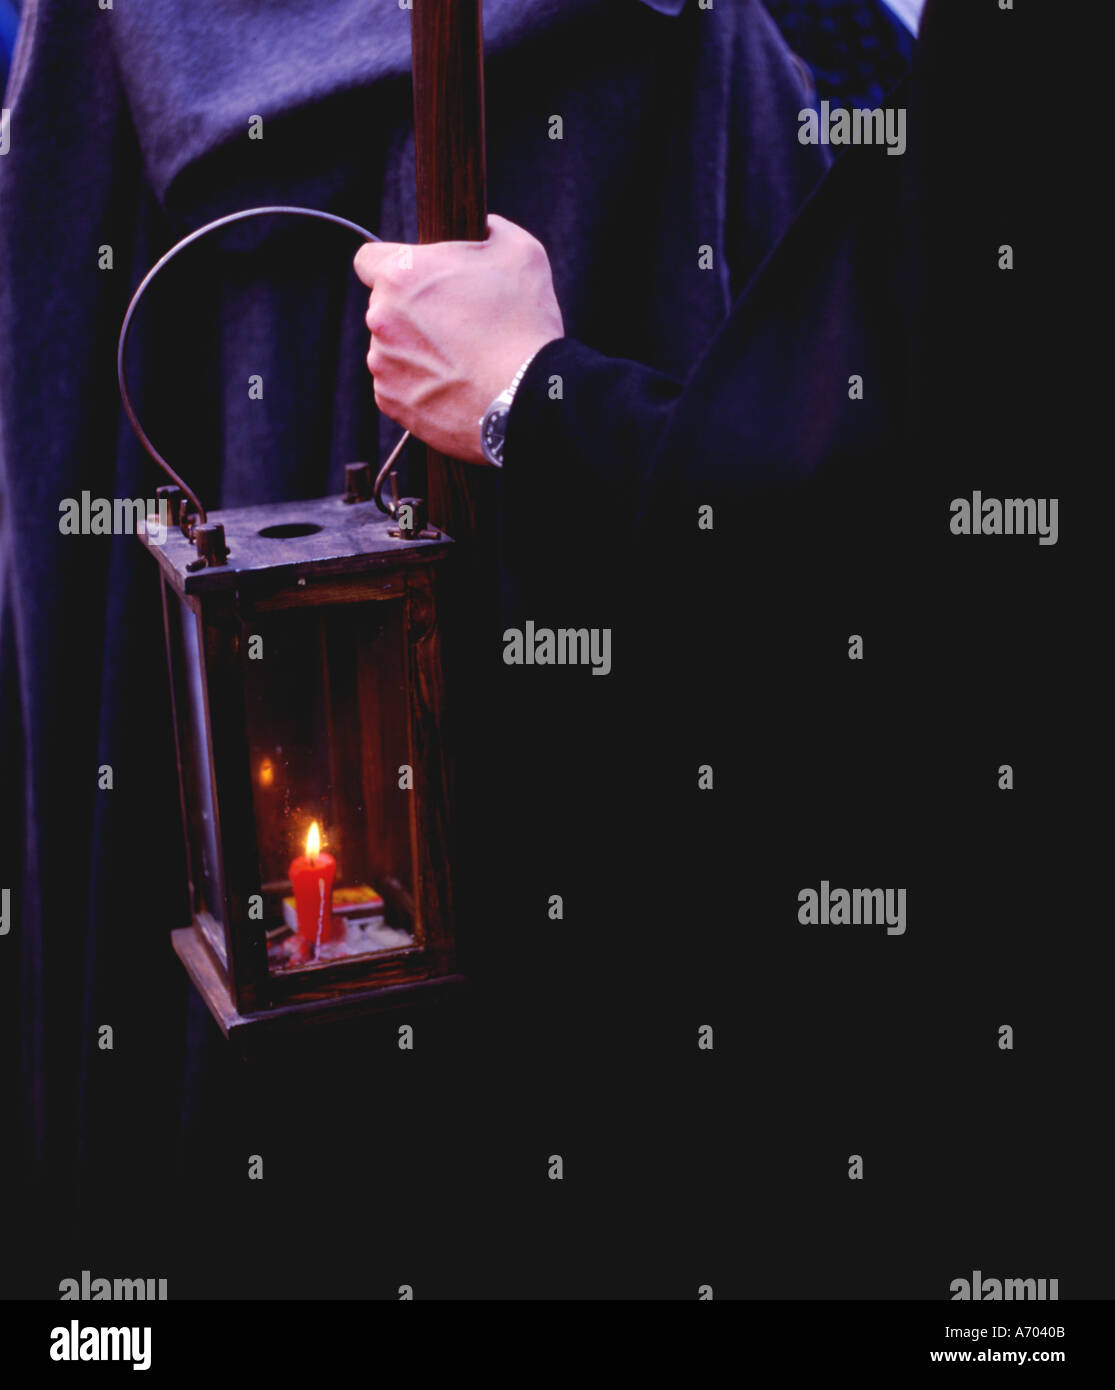 Lampe Laterne in der Hand von einem Nachtwächter Kerzenlicht hand Stockfoto